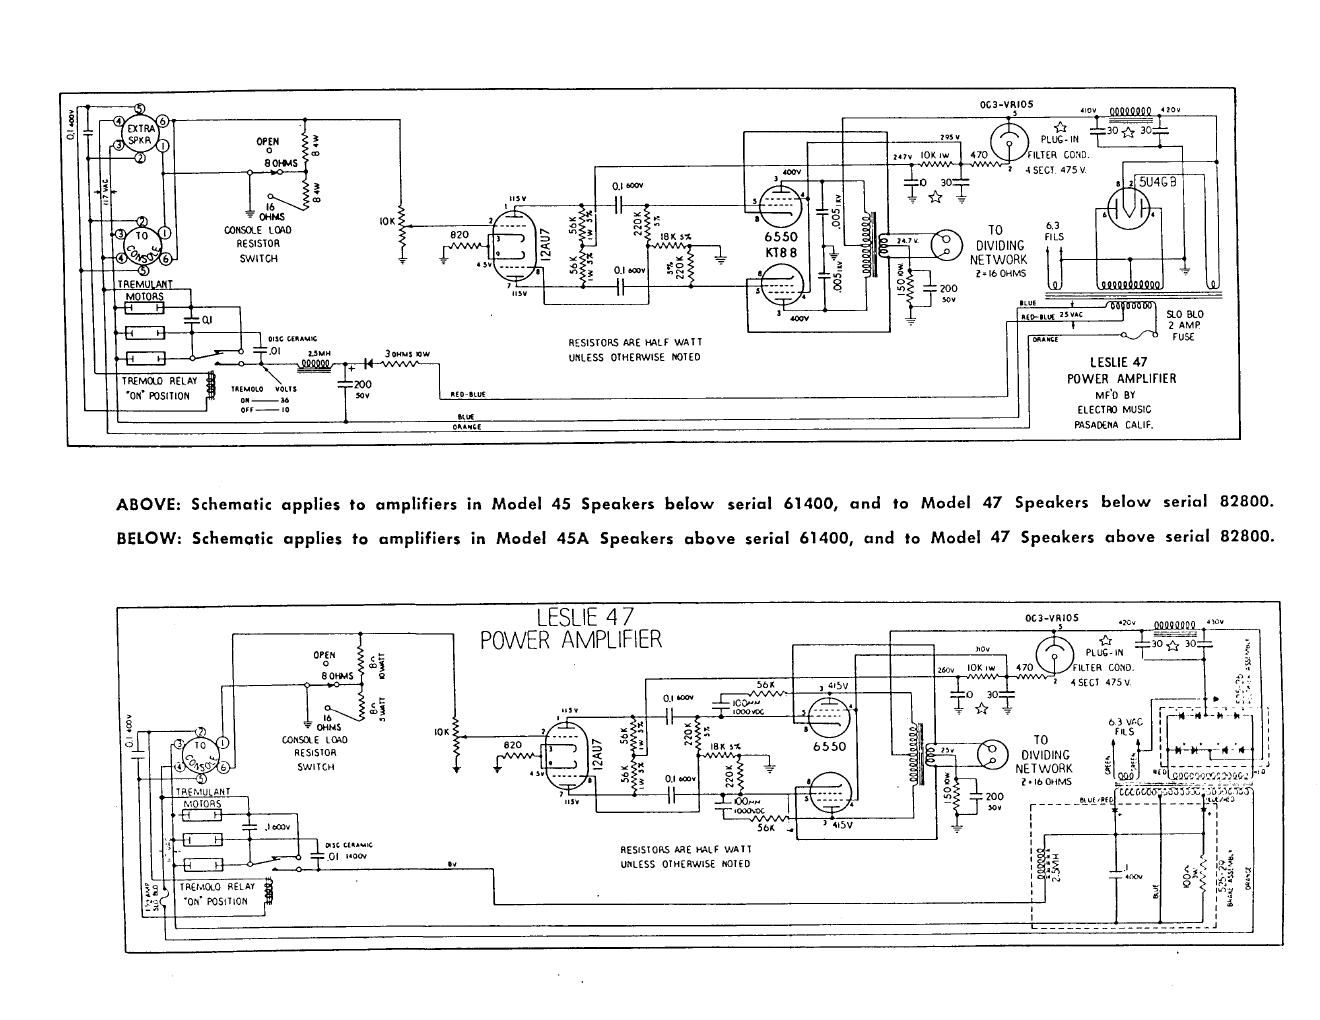 leslie 47 power amp schematics